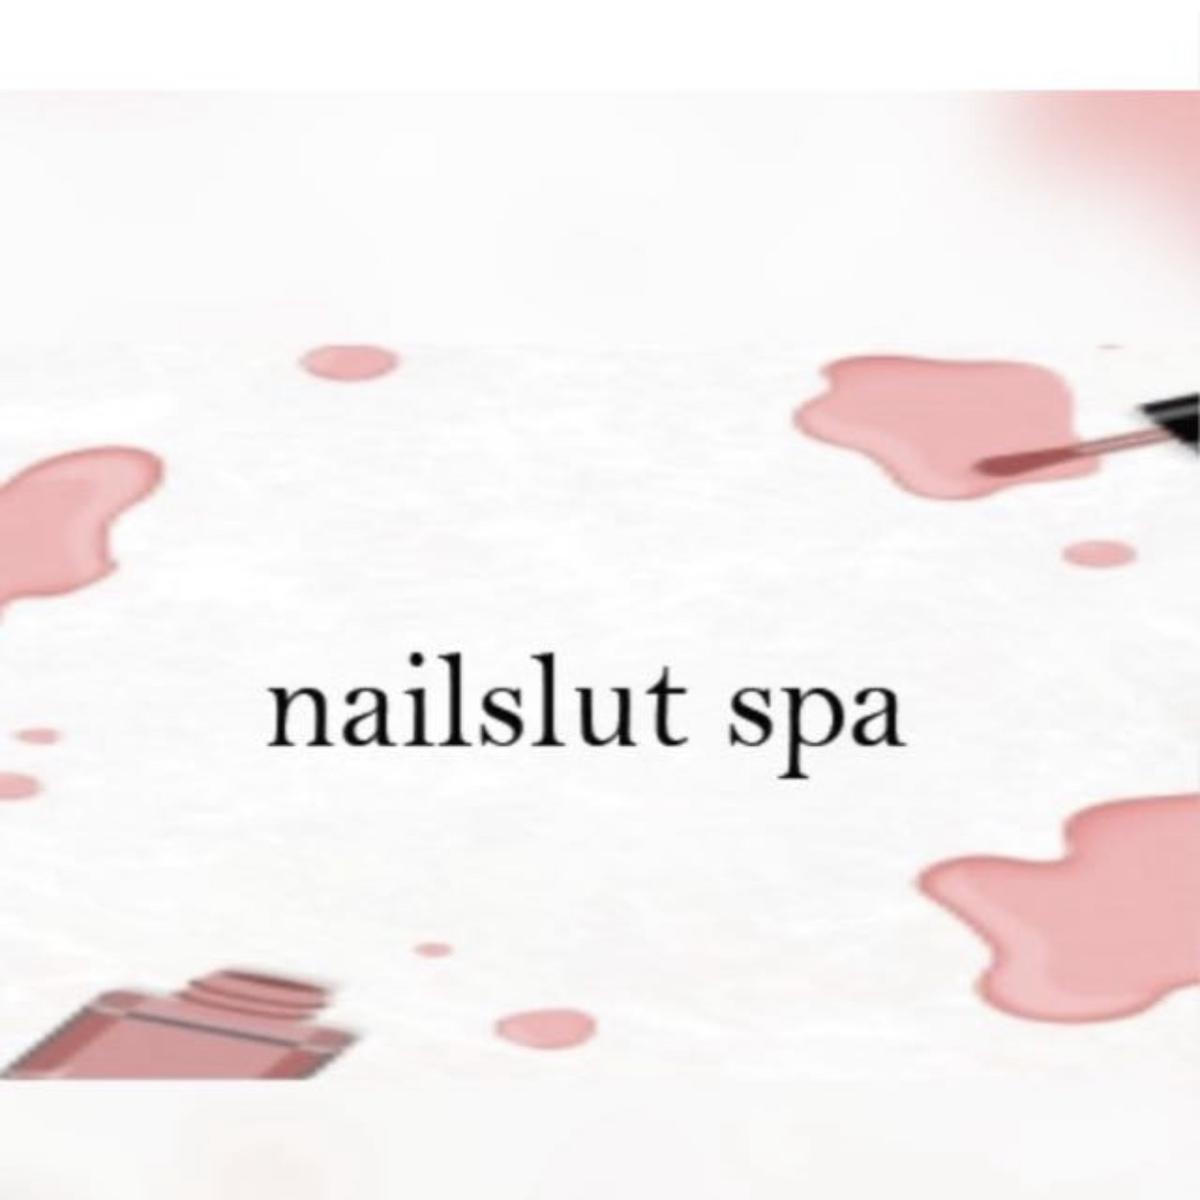 Nailslut spa 's images